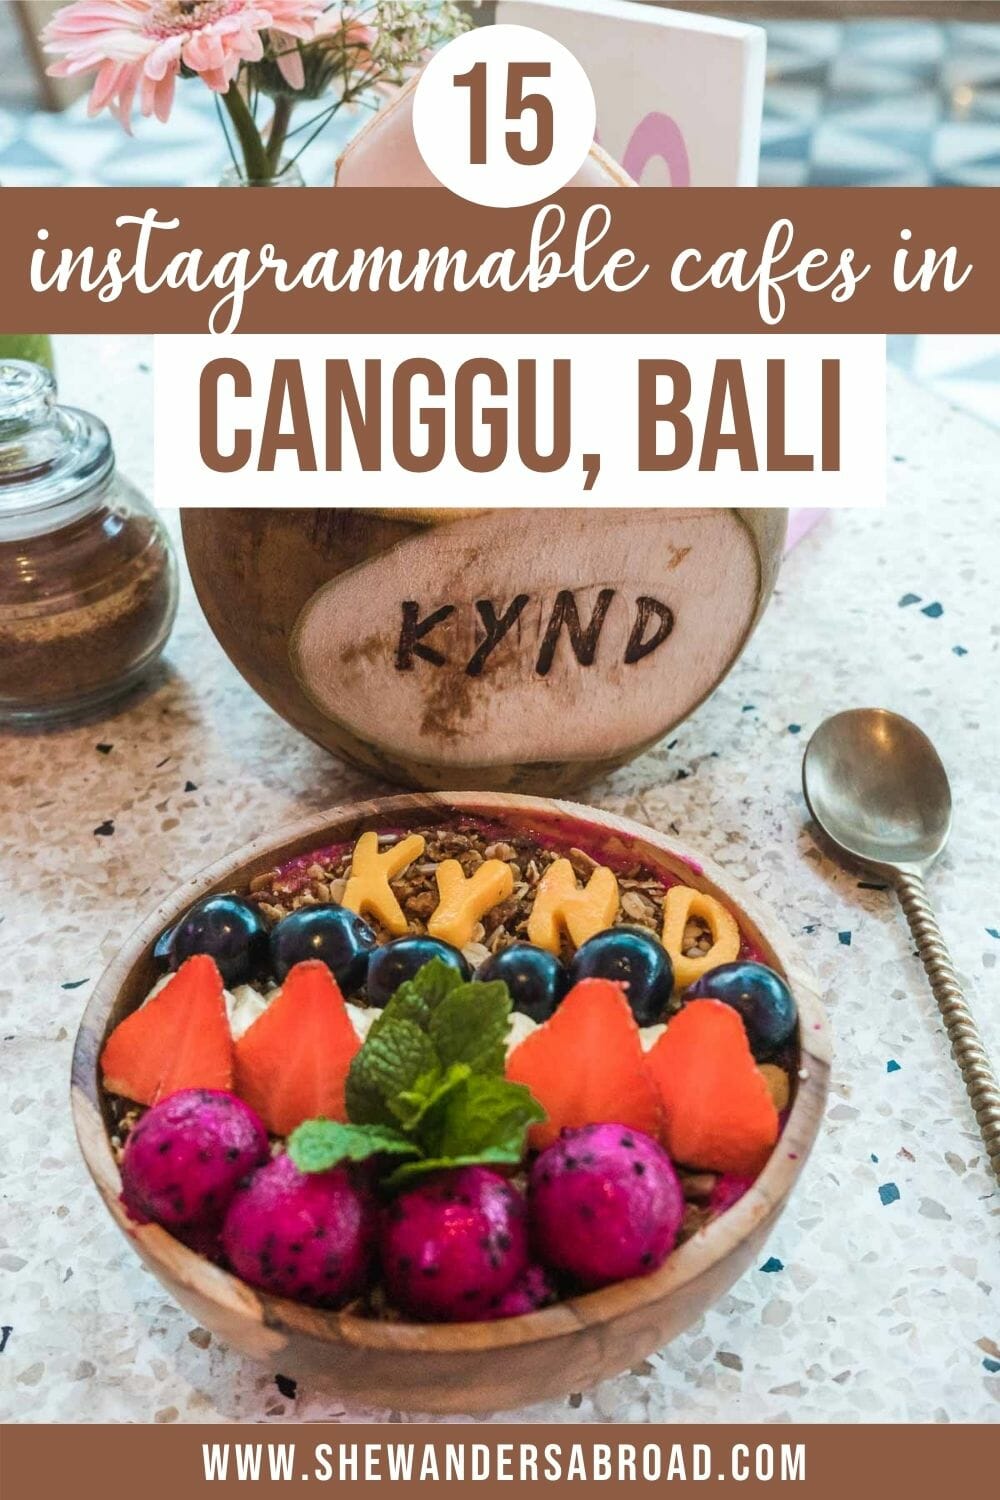 Best Cafes in Canggu, Bali